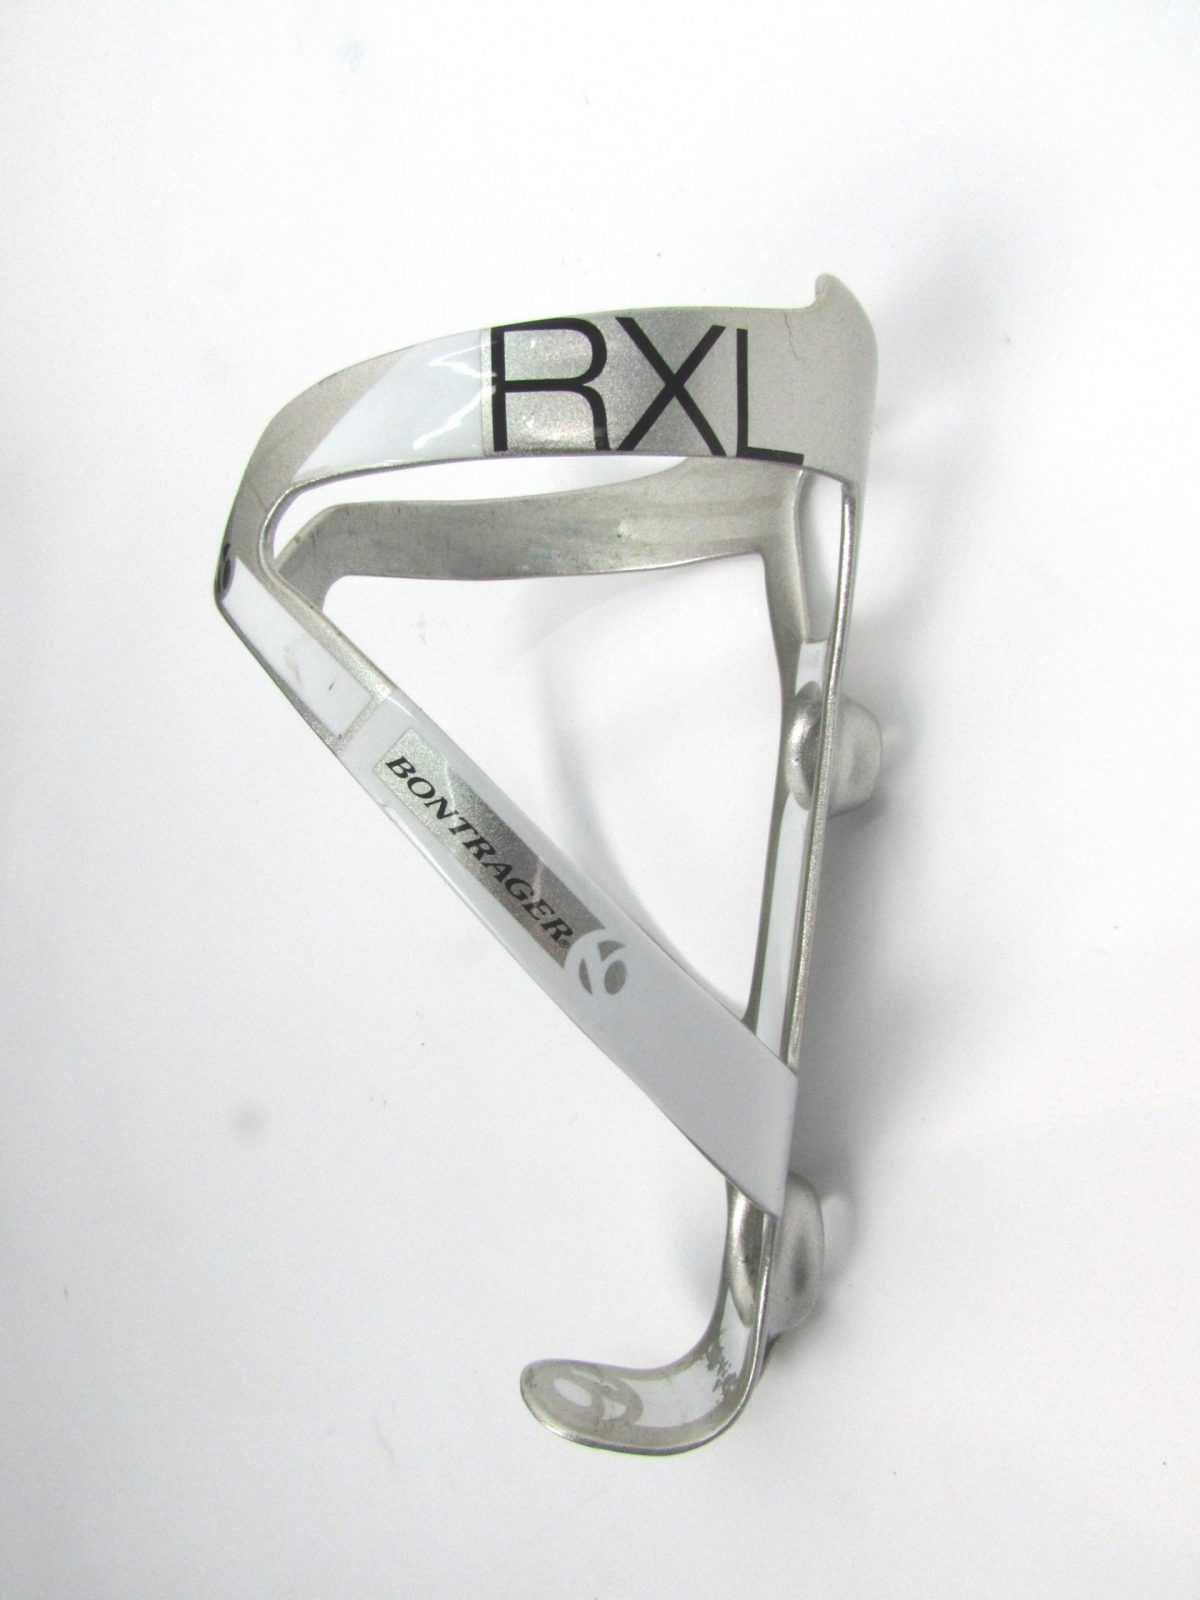 Флягодержатель б/у Bontrager RXL Carbon silver